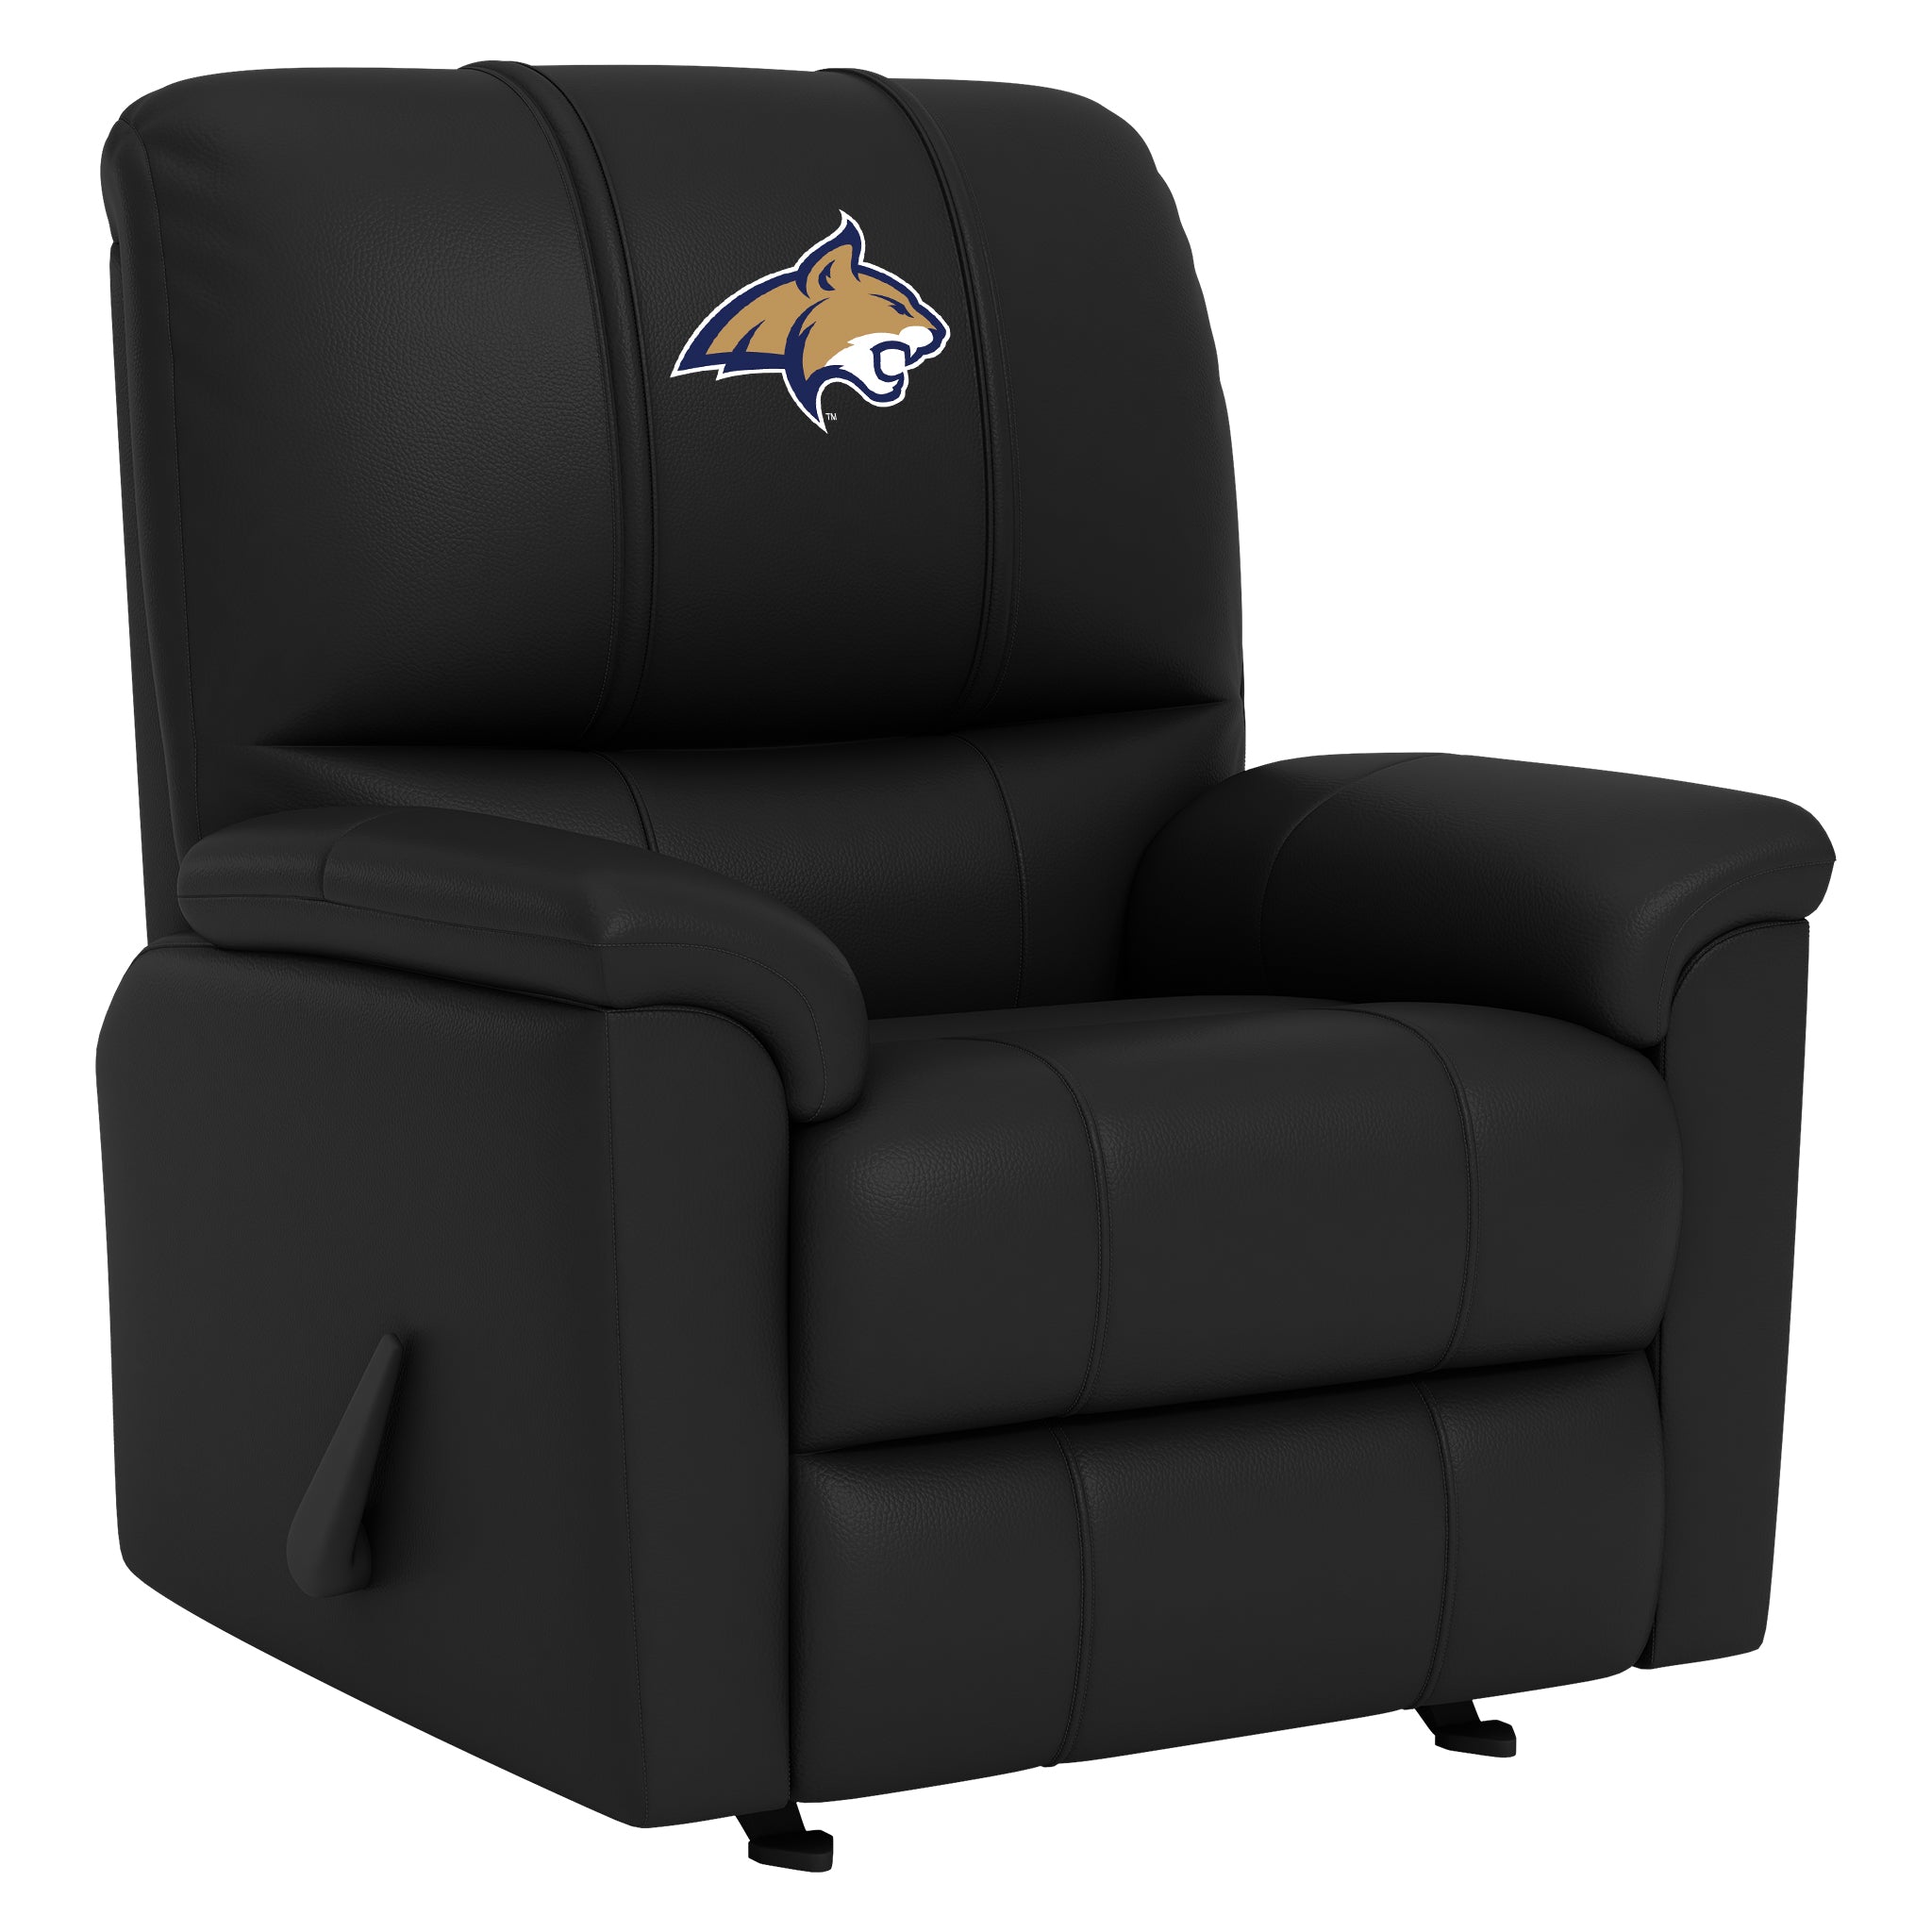 Missouri Tigers Silver Club Chair with Missouri Tigers Logo